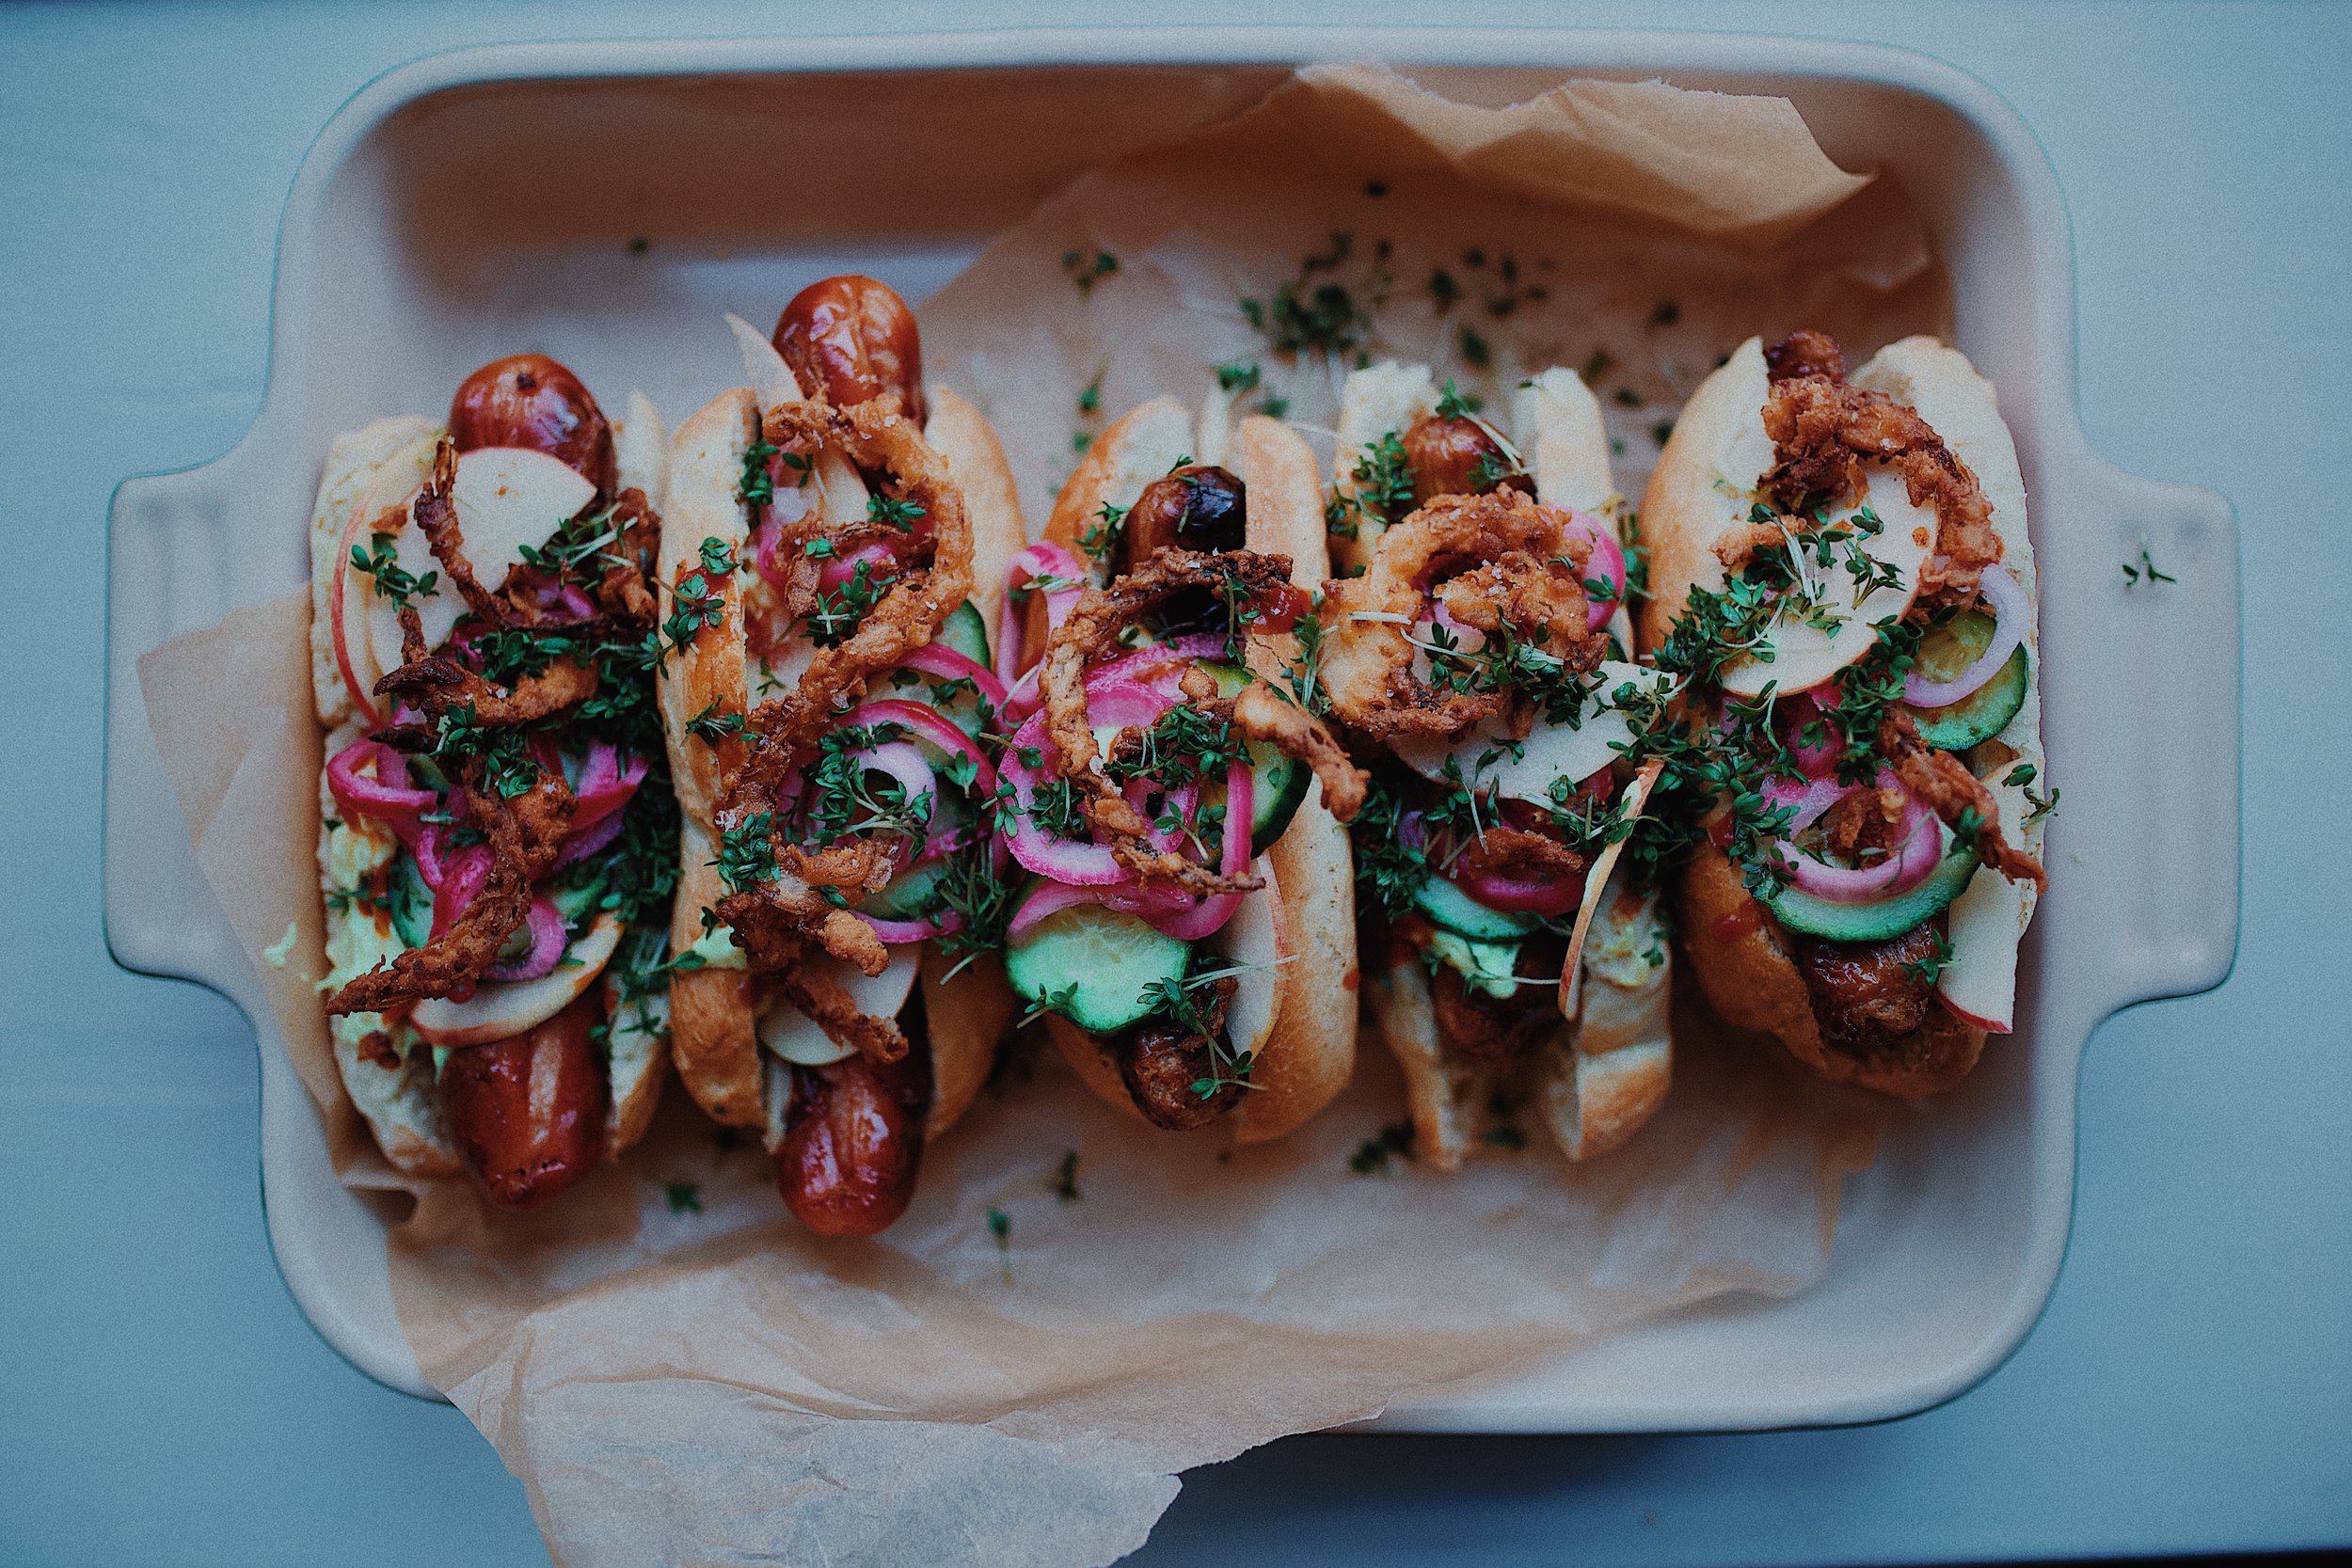 Hotdogs med topping — Margrethe